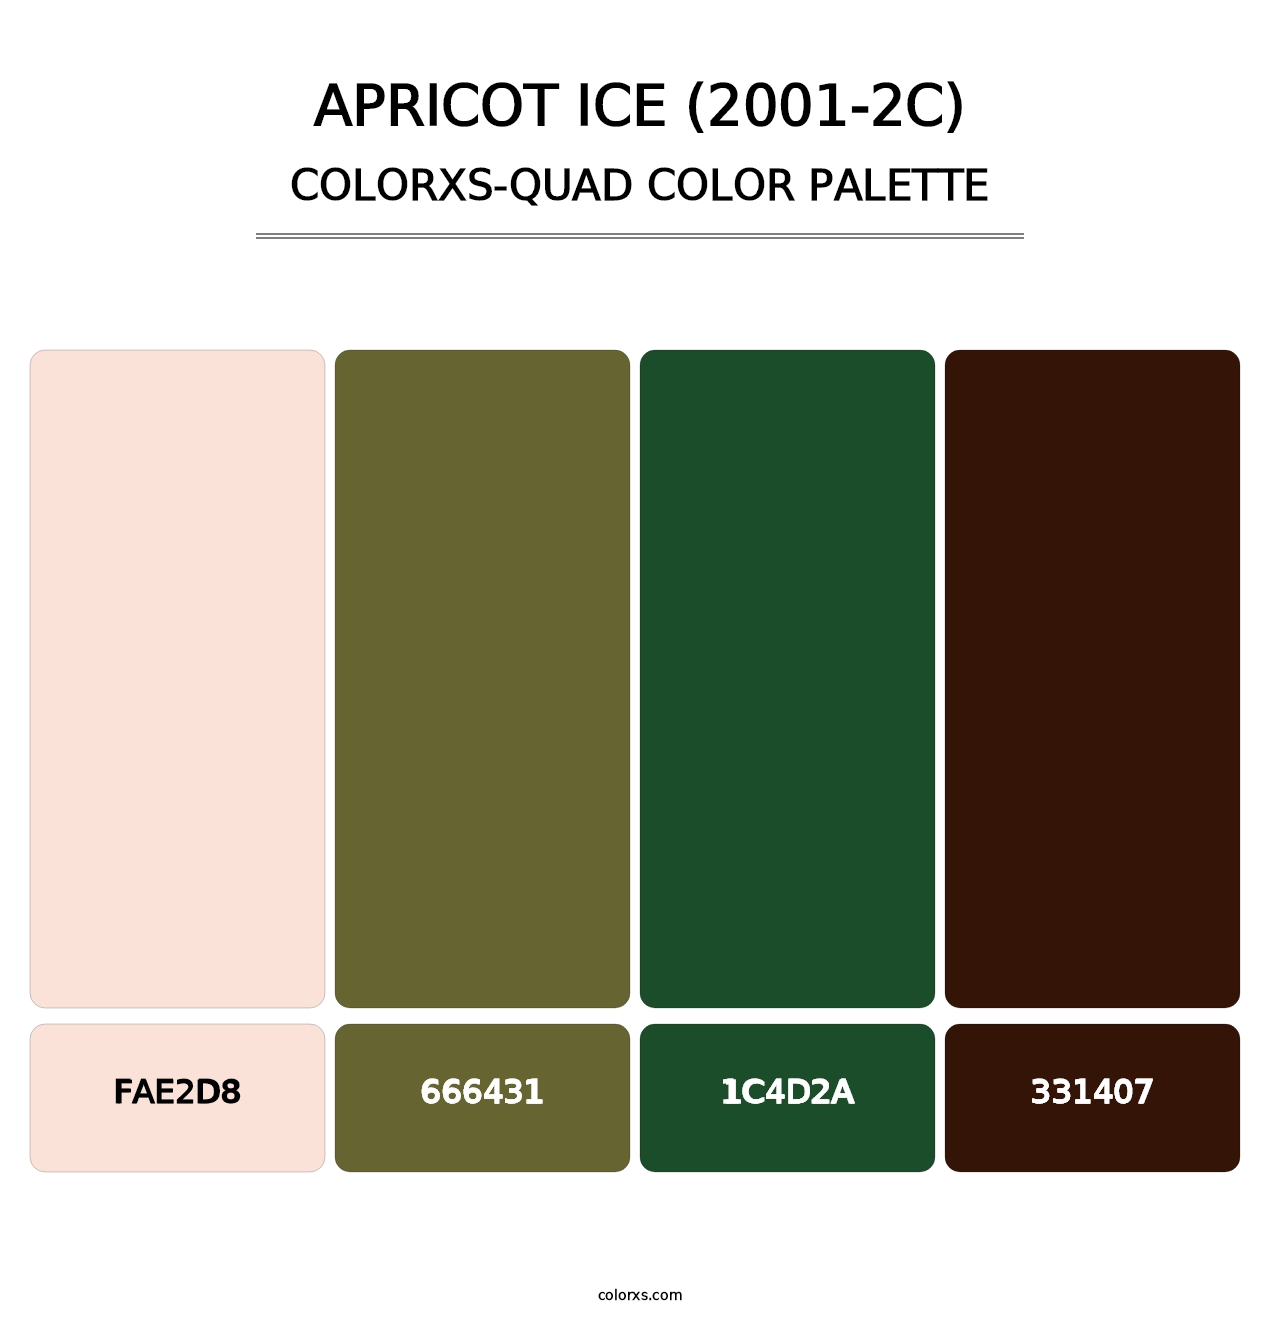 Apricot Ice (2001-2C) - Colorxs Quad Palette